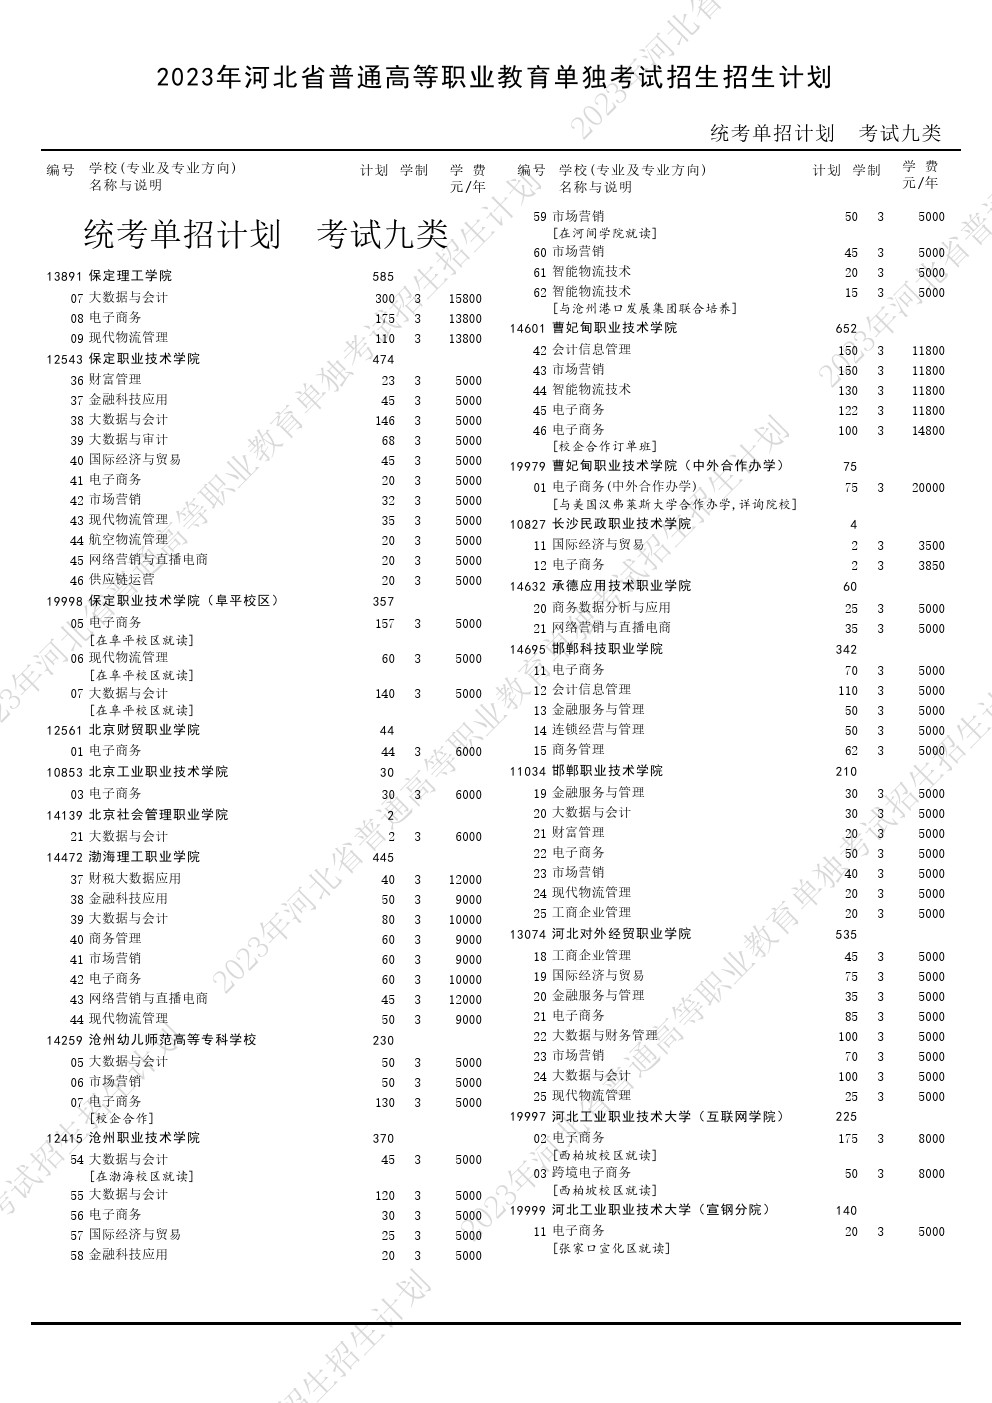 2023年河北省高职单招考试九类招生计划